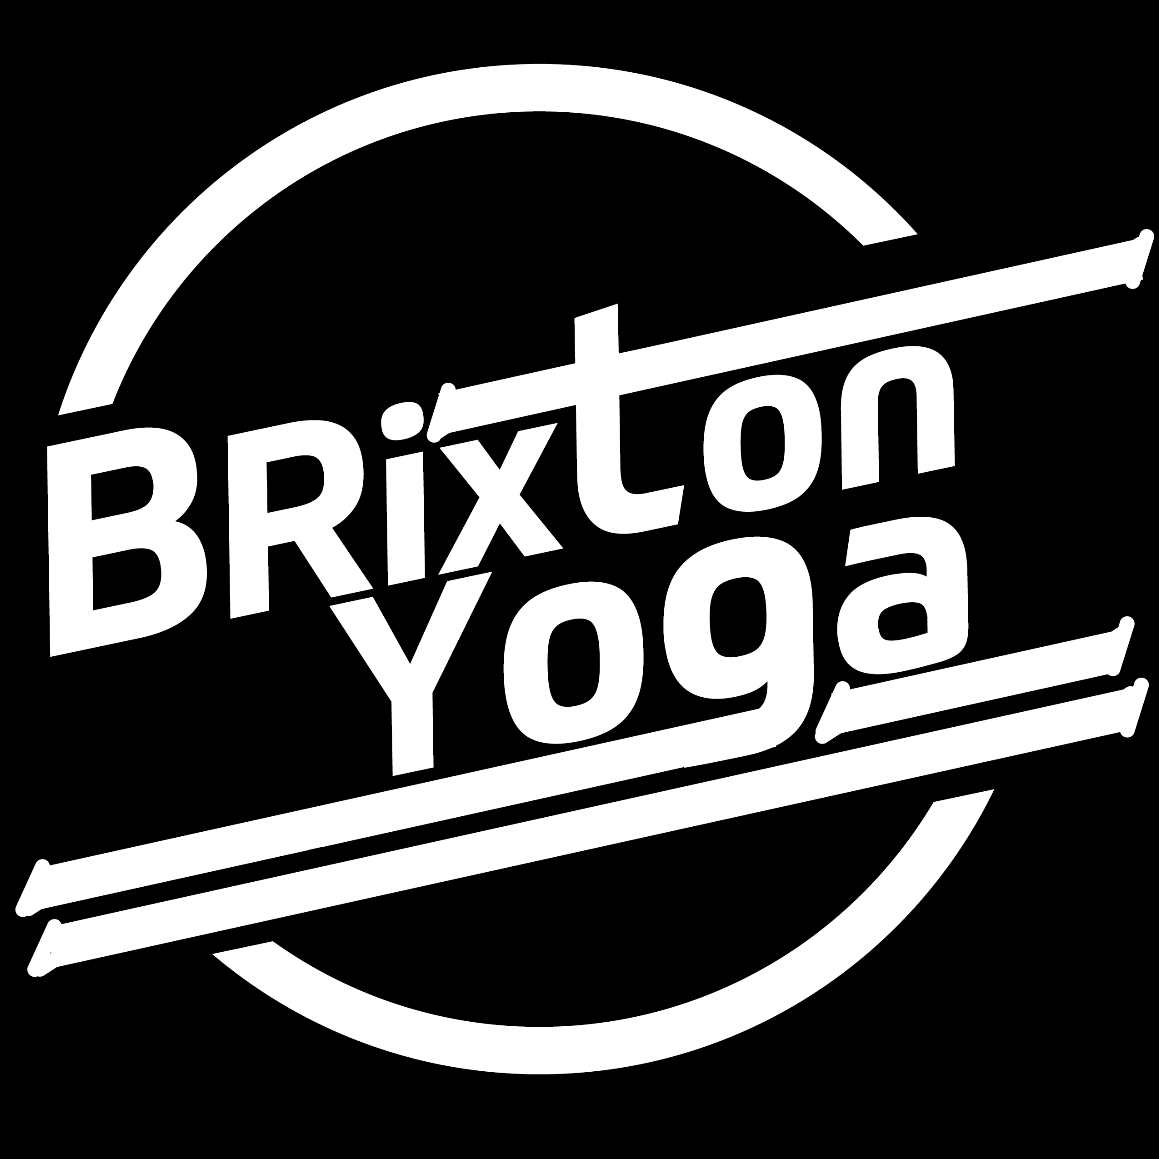 www.brixtonyoga.co.uk